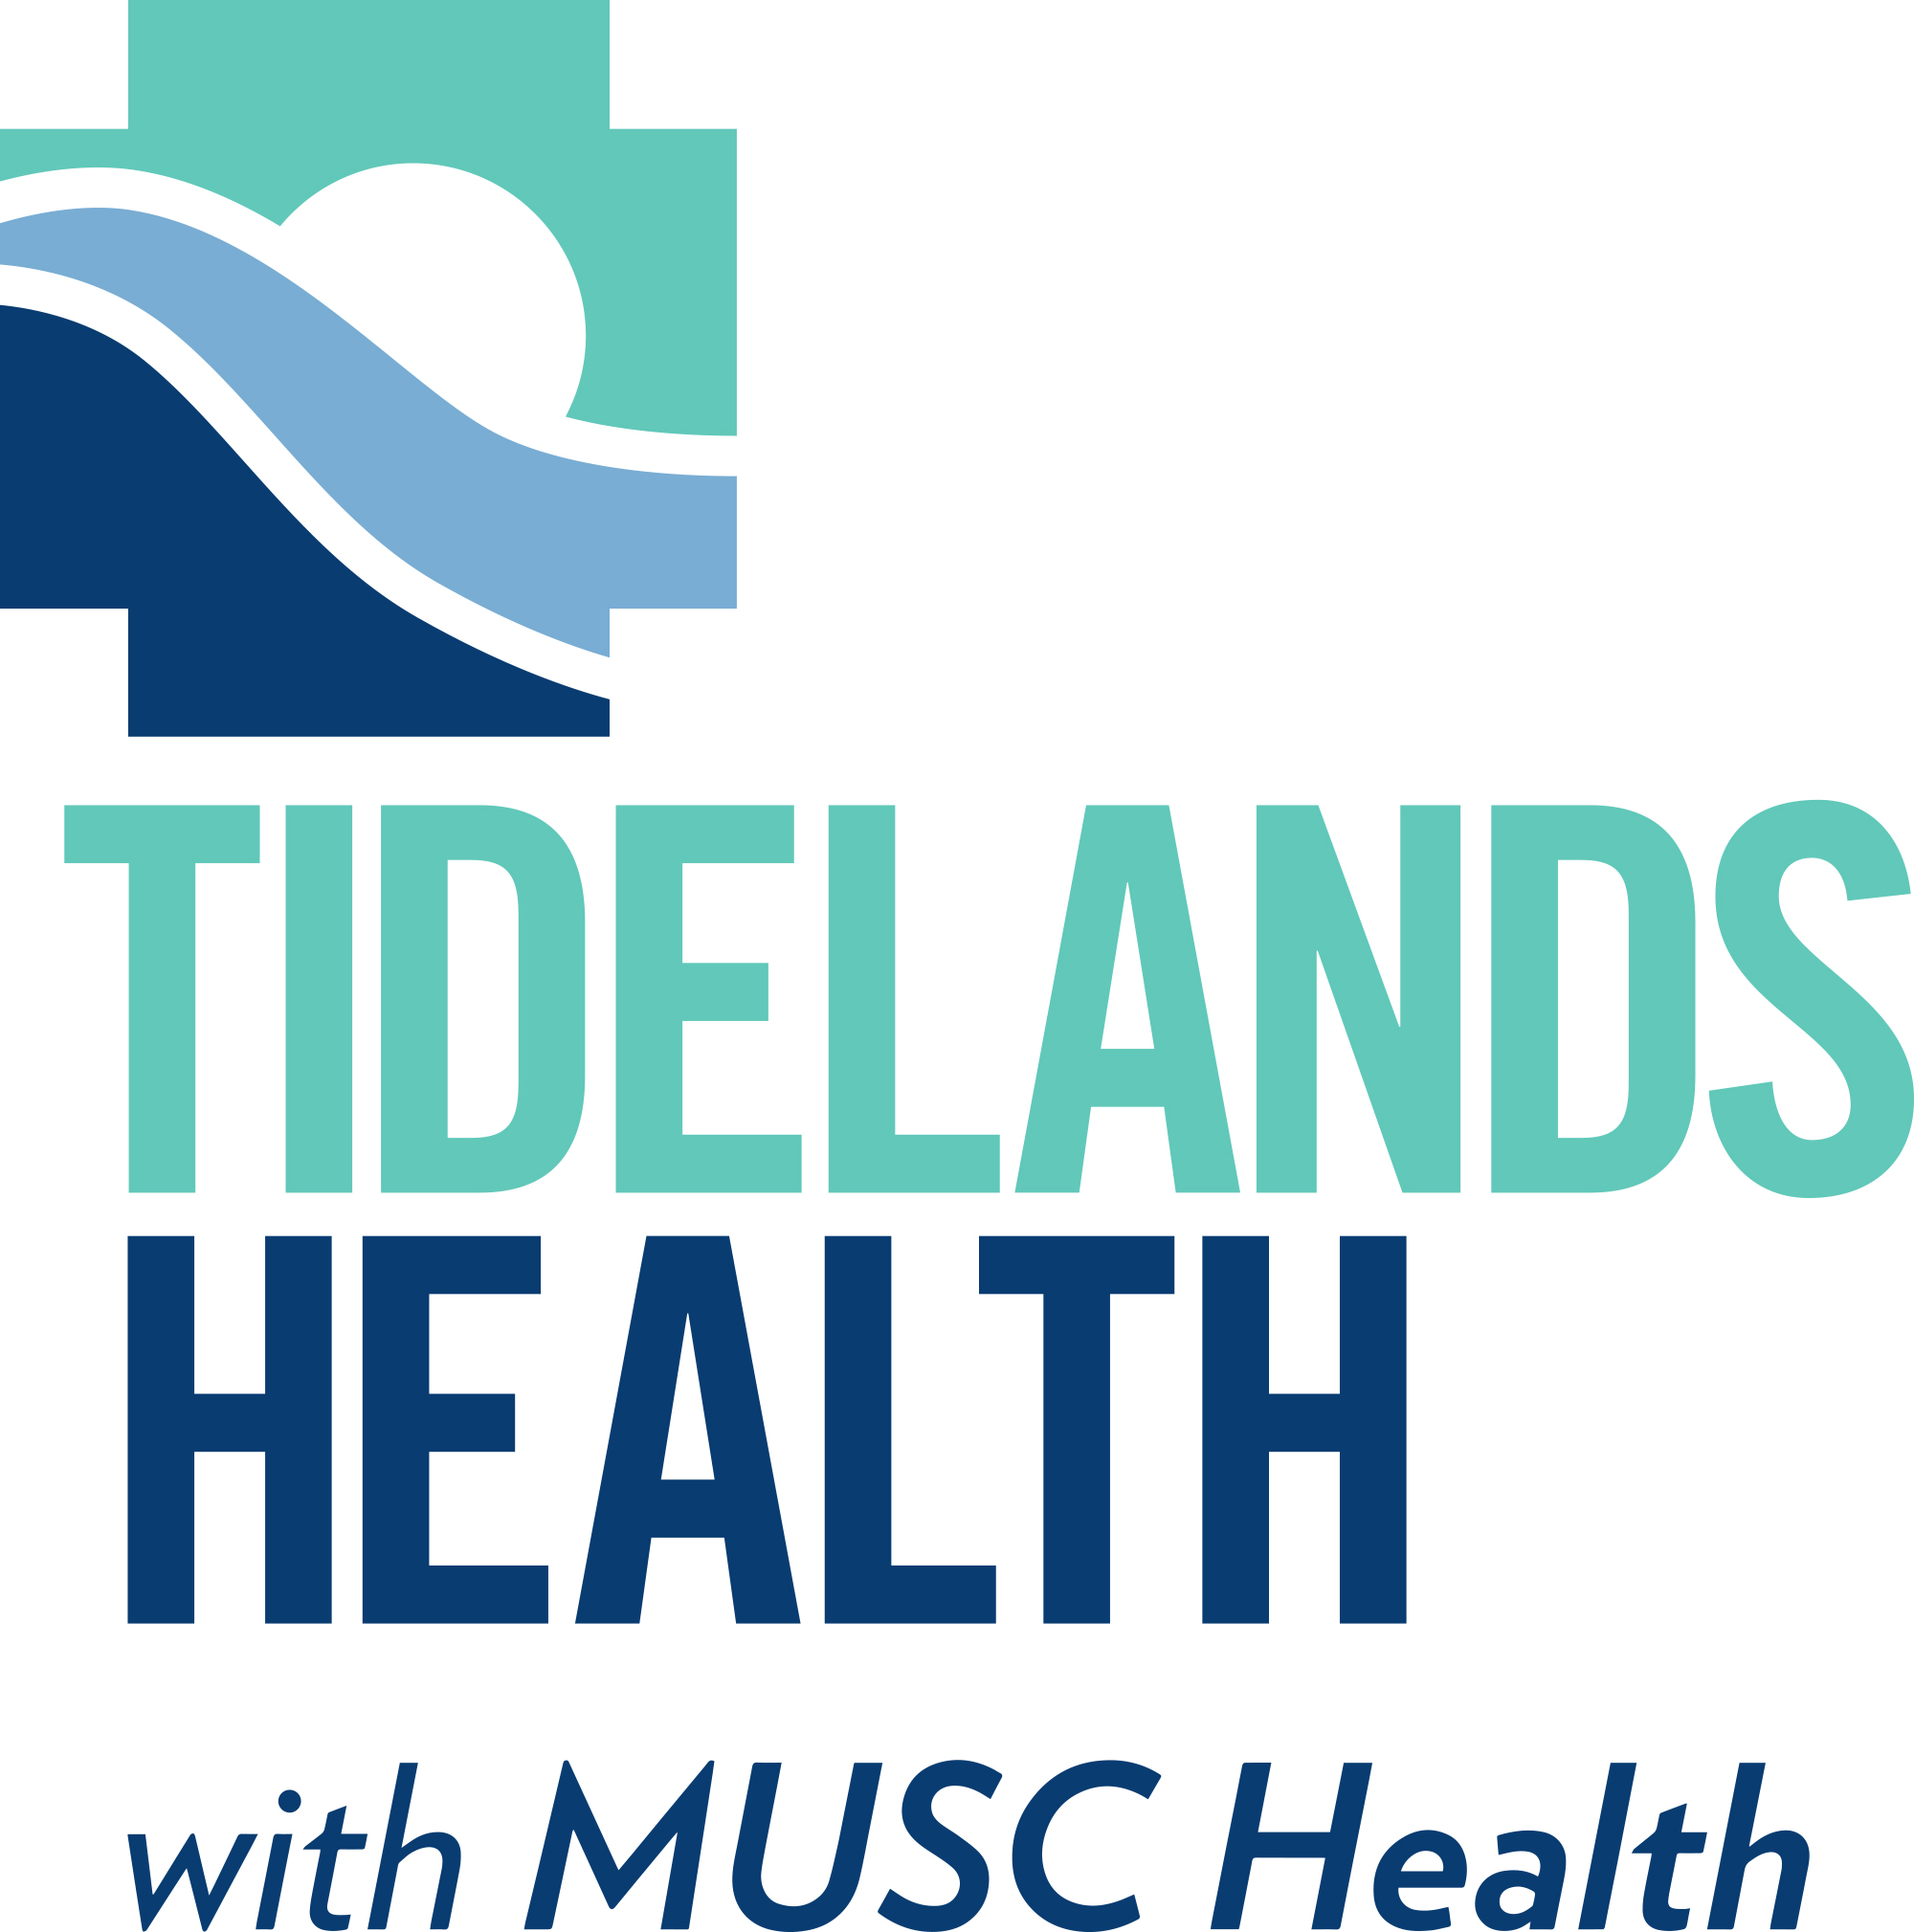 Tidelands Health